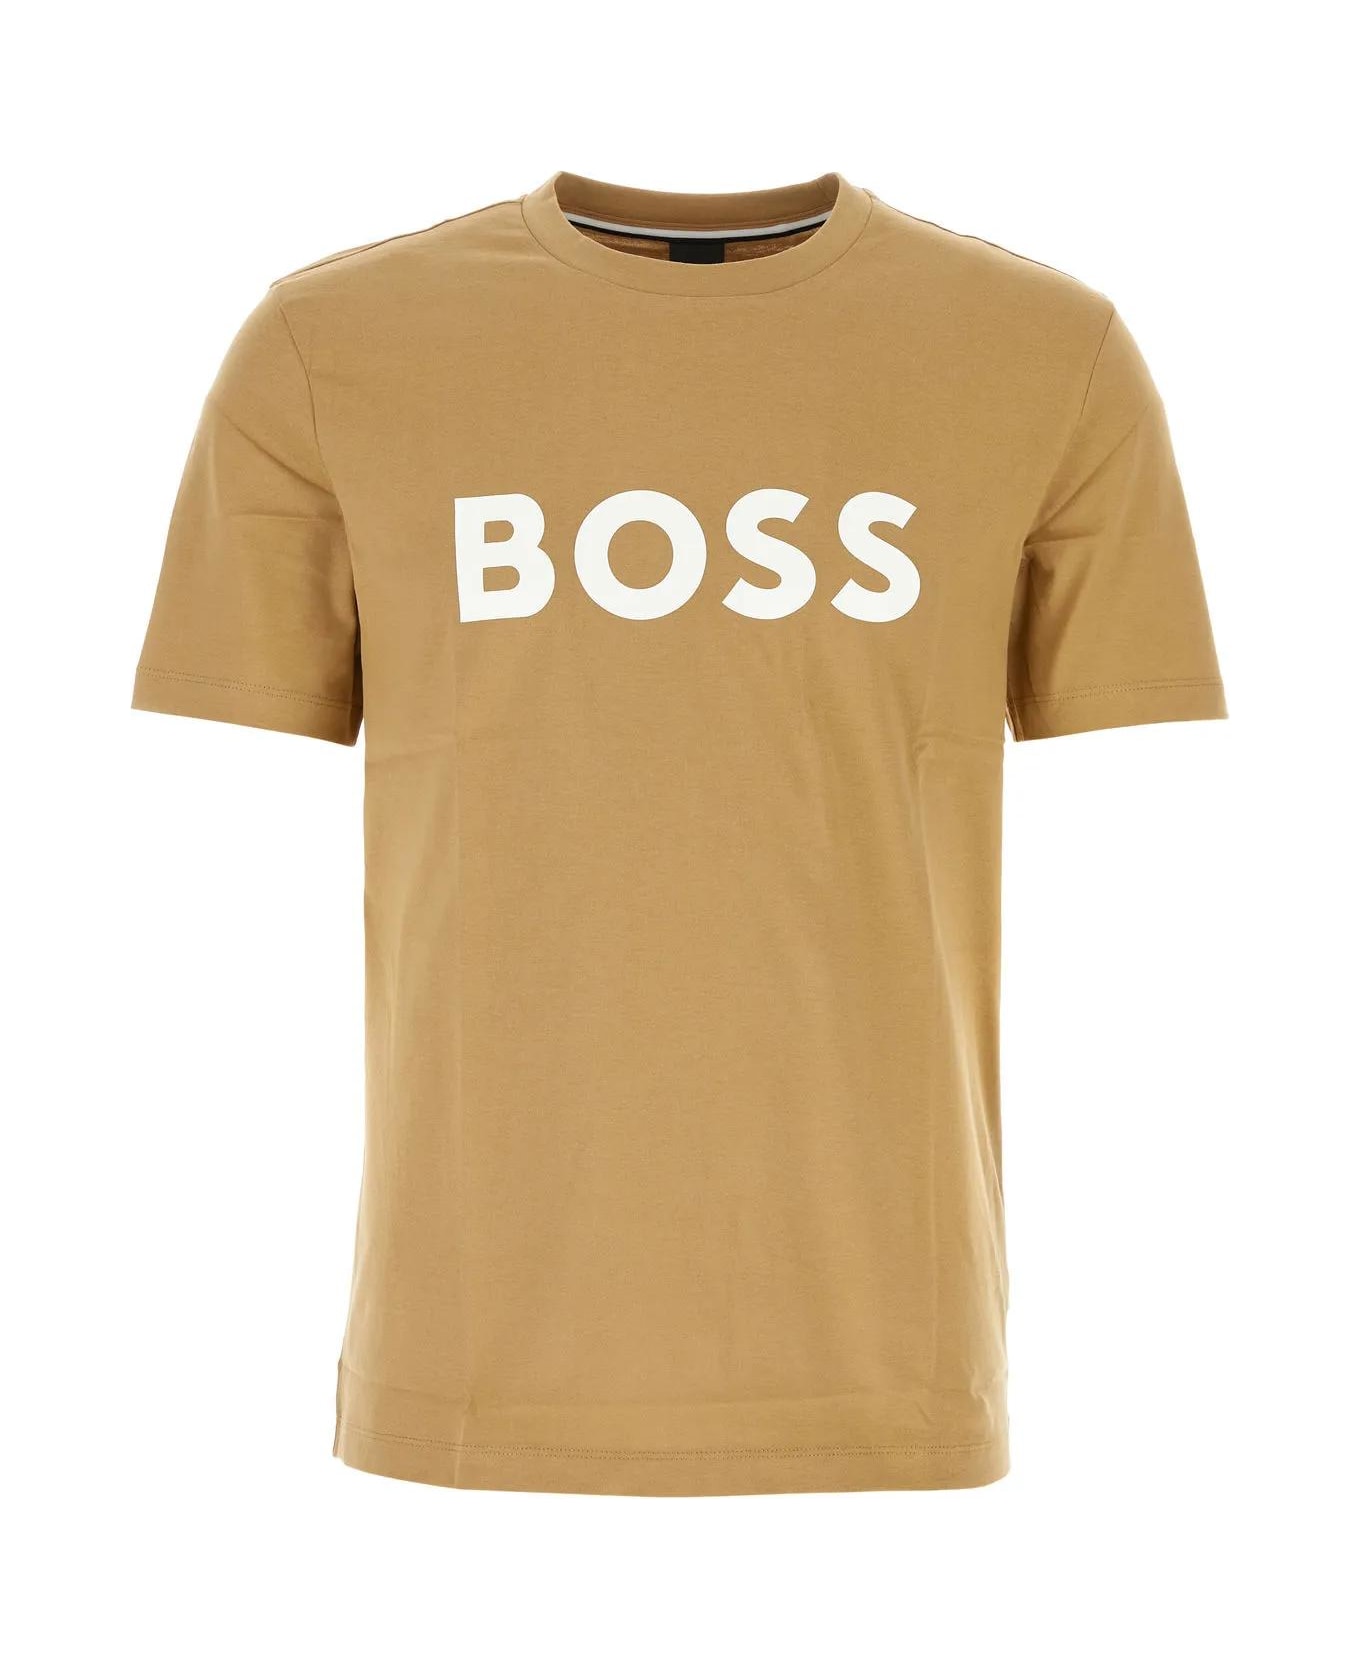 Hugo Boss Camel Cotton T-shirt - Medium Beige